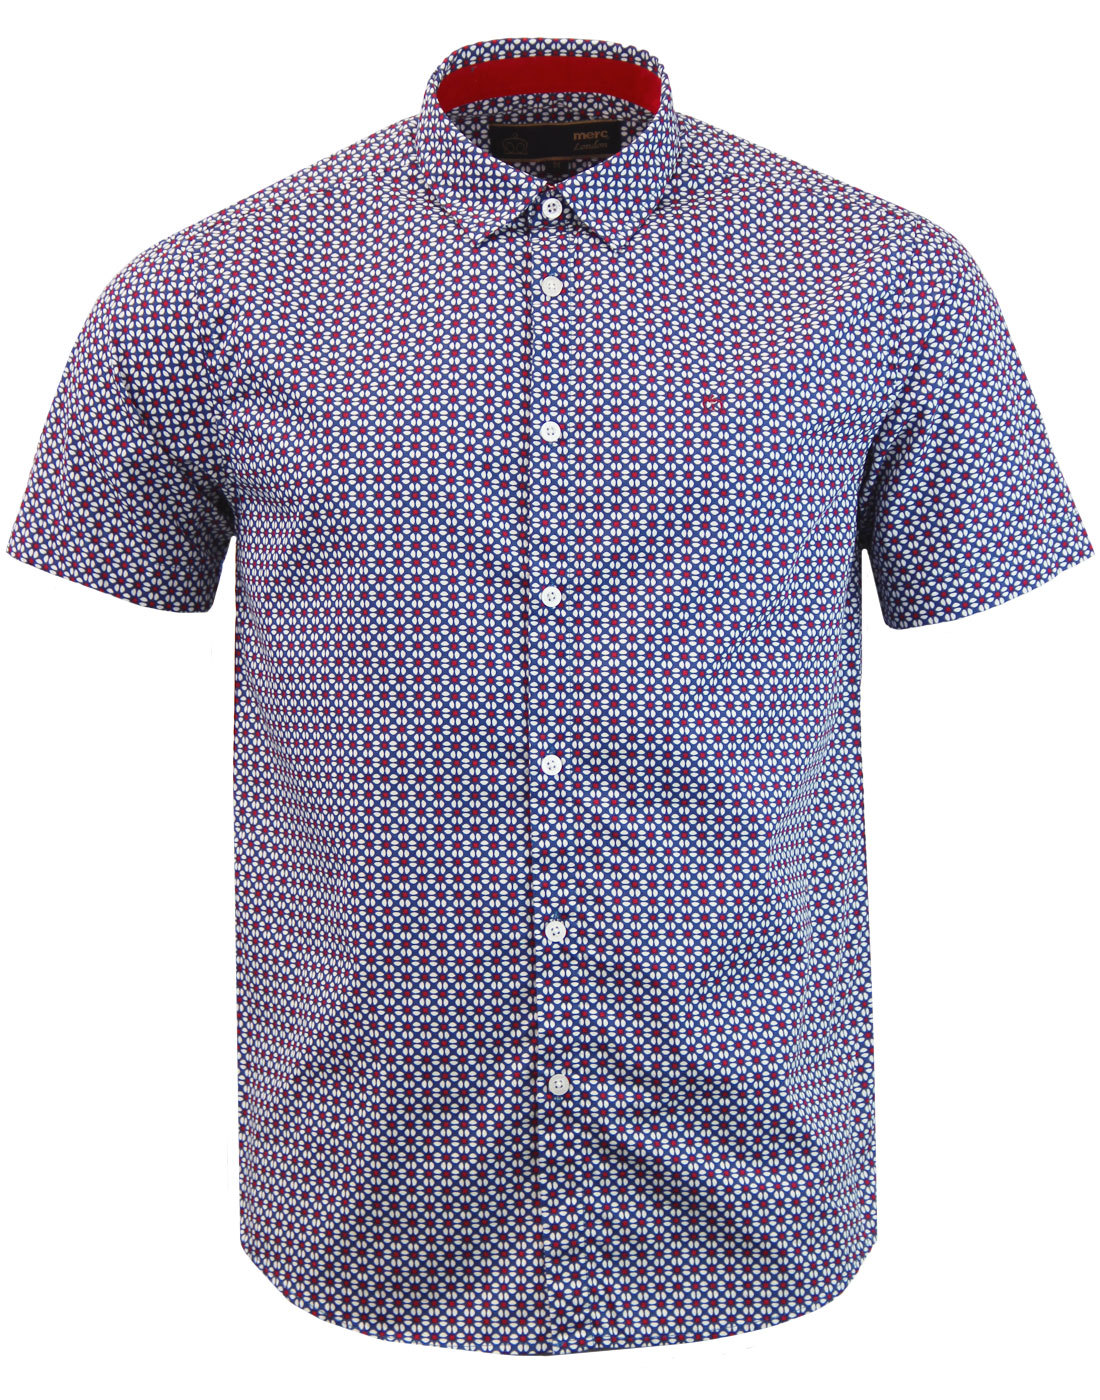 MERC Fircroft Men's 60s Mod Short Sleeve Retro Floral Shirt Blue